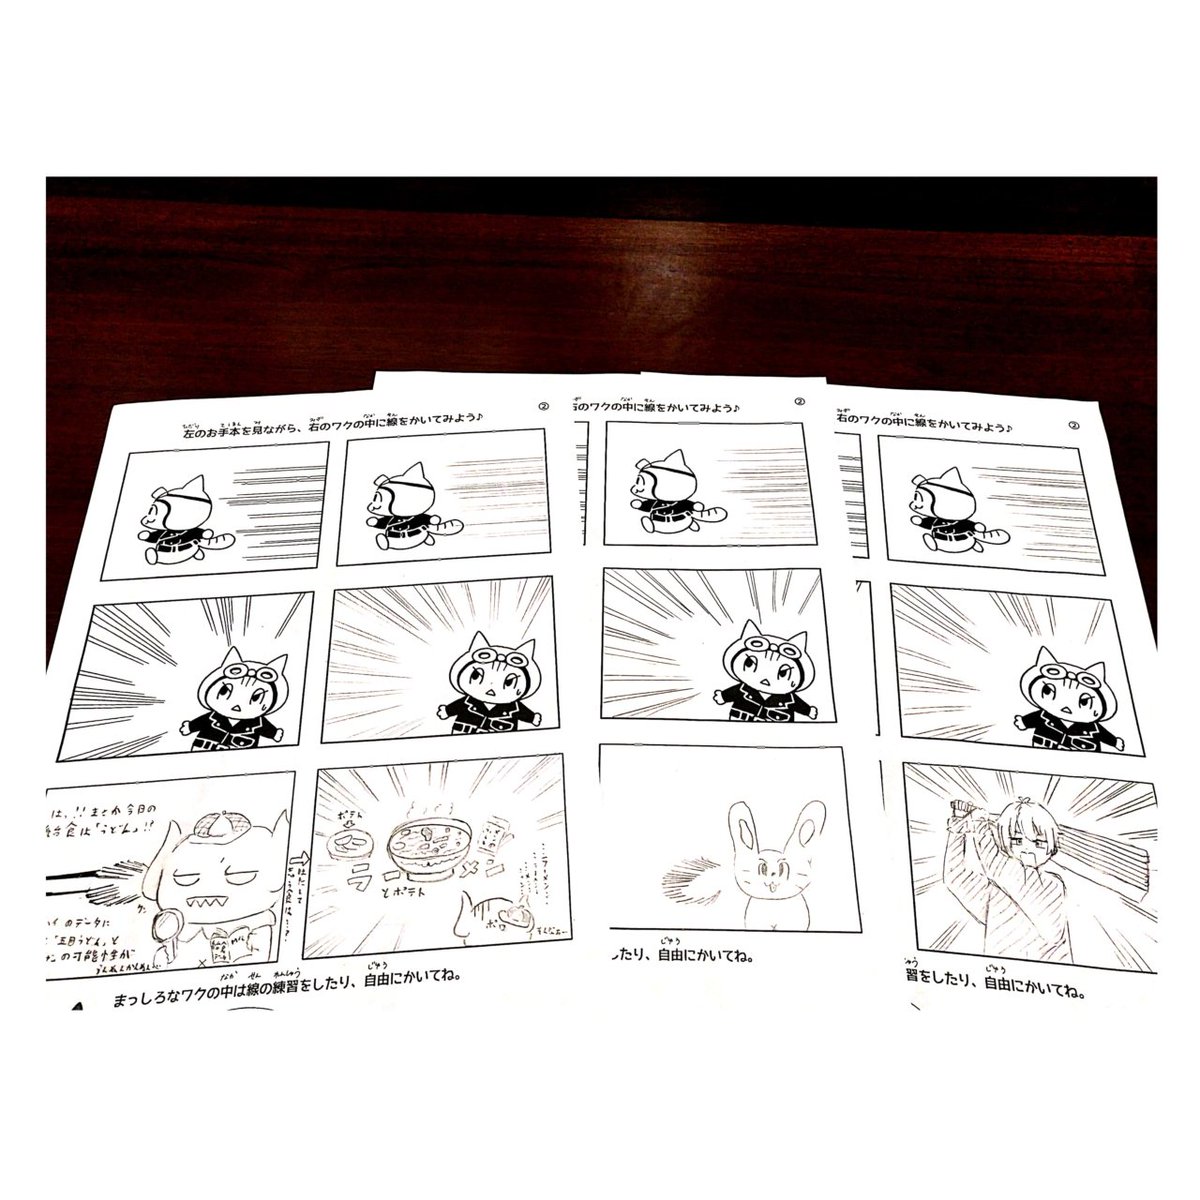 5月20日、27日(土)13時-14時半開講の「田島ハルと漫画・イラストを描こう」のテーマは、「ショート漫画」。コマ割りのルールやセリフの入れ方など基本から教えます。お話にオチをつけたり完結しなくていいので、まずは気楽にやってみましょう☆小学生~高校生の皆さんのご参加をお待ちしております🐈️